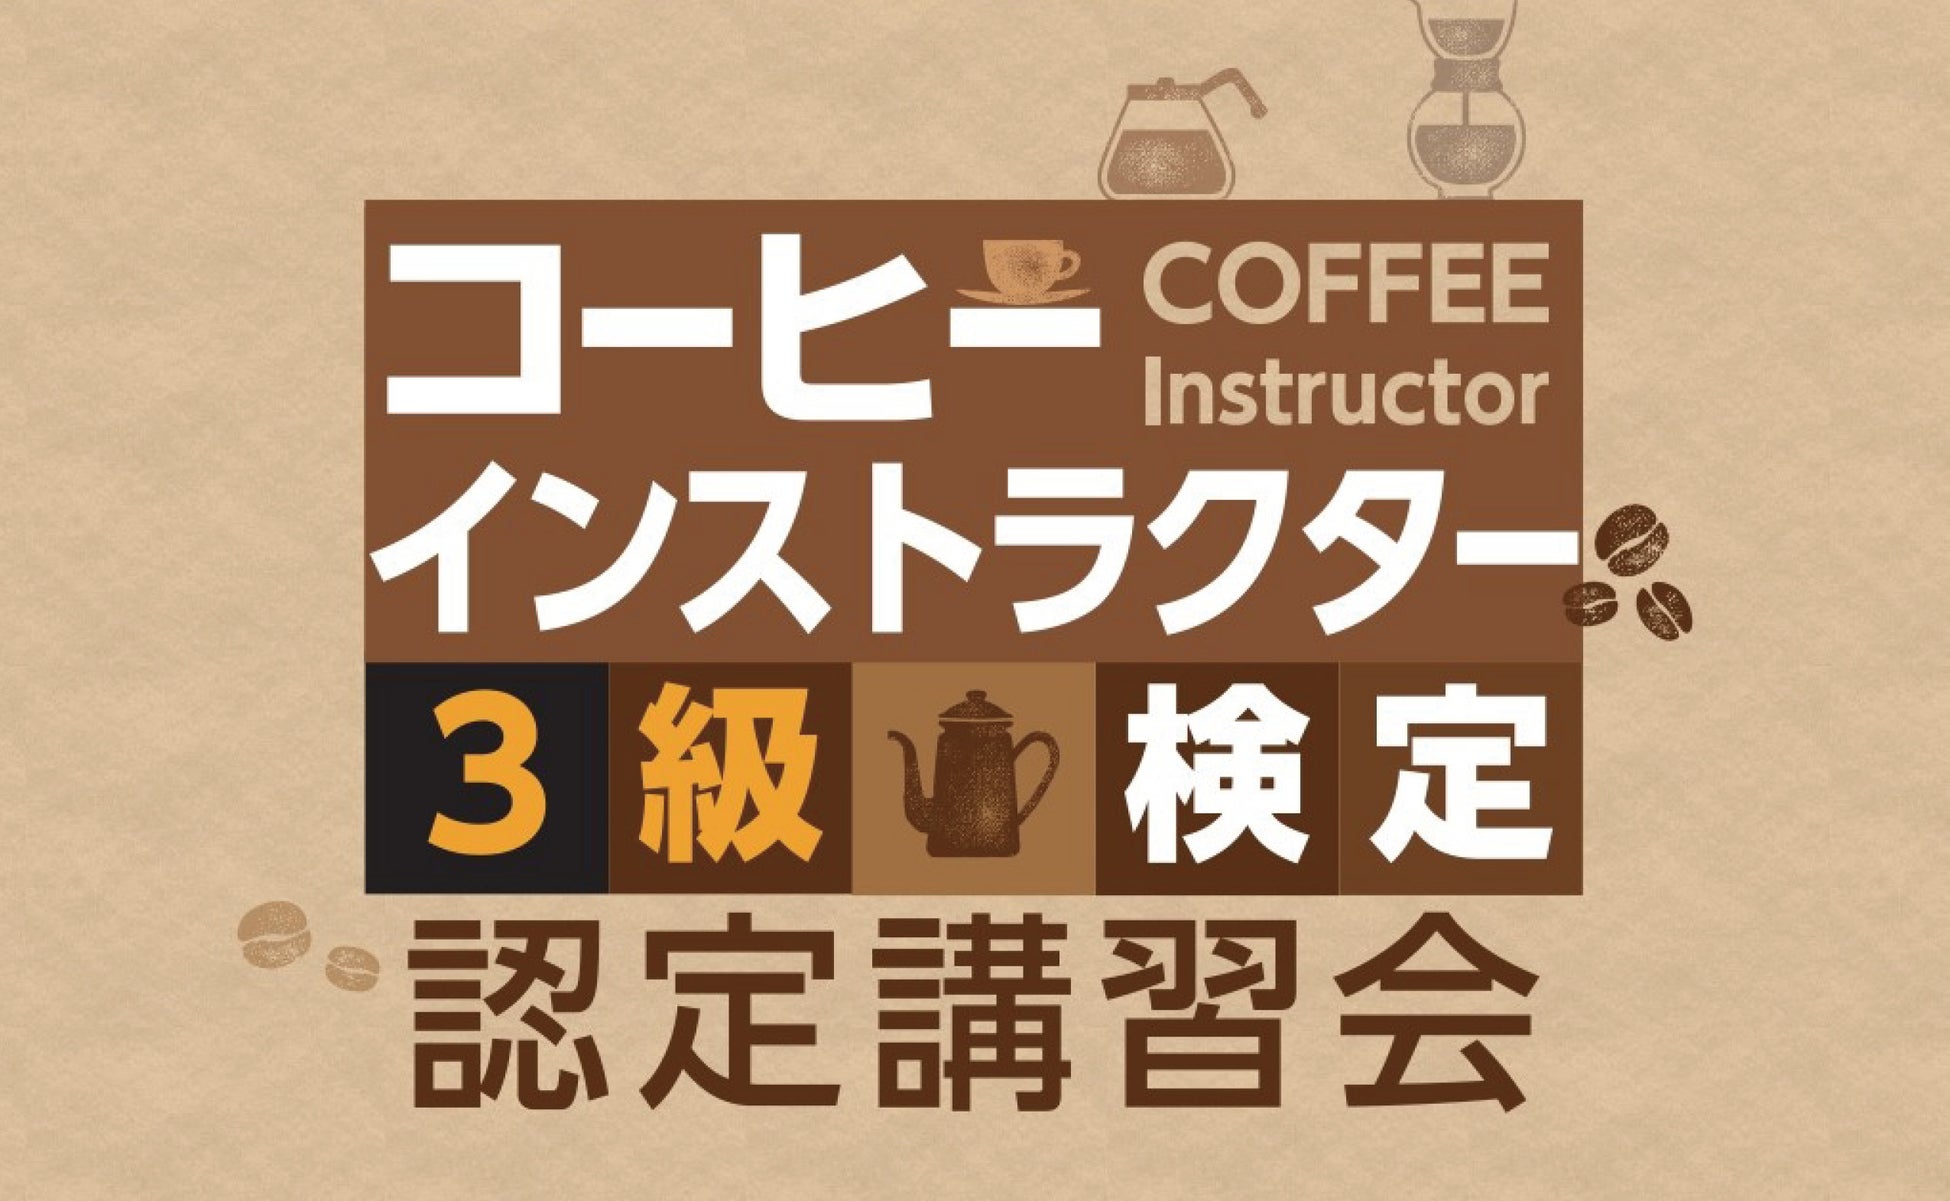 京都で生まれた三喜屋珈琲、団体様・企業様向けに「コーヒーインストラクター3級オンライン講座」の提供を開始いたしました。